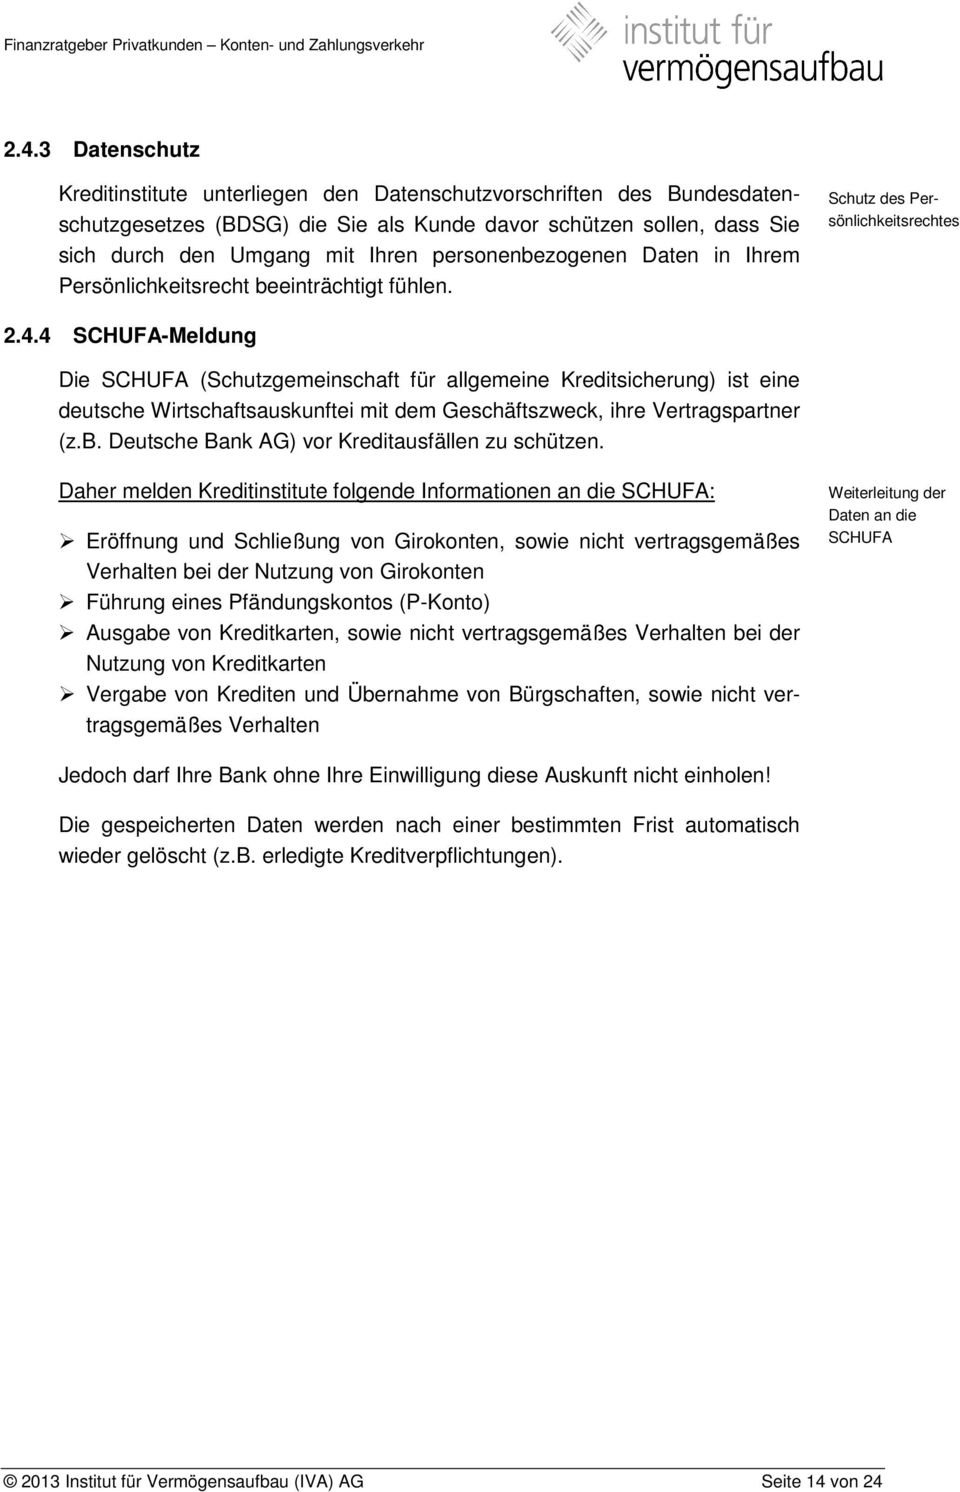 4 SCHUFA-Meldung Die SCHUFA (Schutzgemeinschaft für allgemeine Kreditsicherung) ist eine deutsche Wirtschaftsauskunftei mit dem Geschäftszweck, ihre Vertragspartner (z.b.